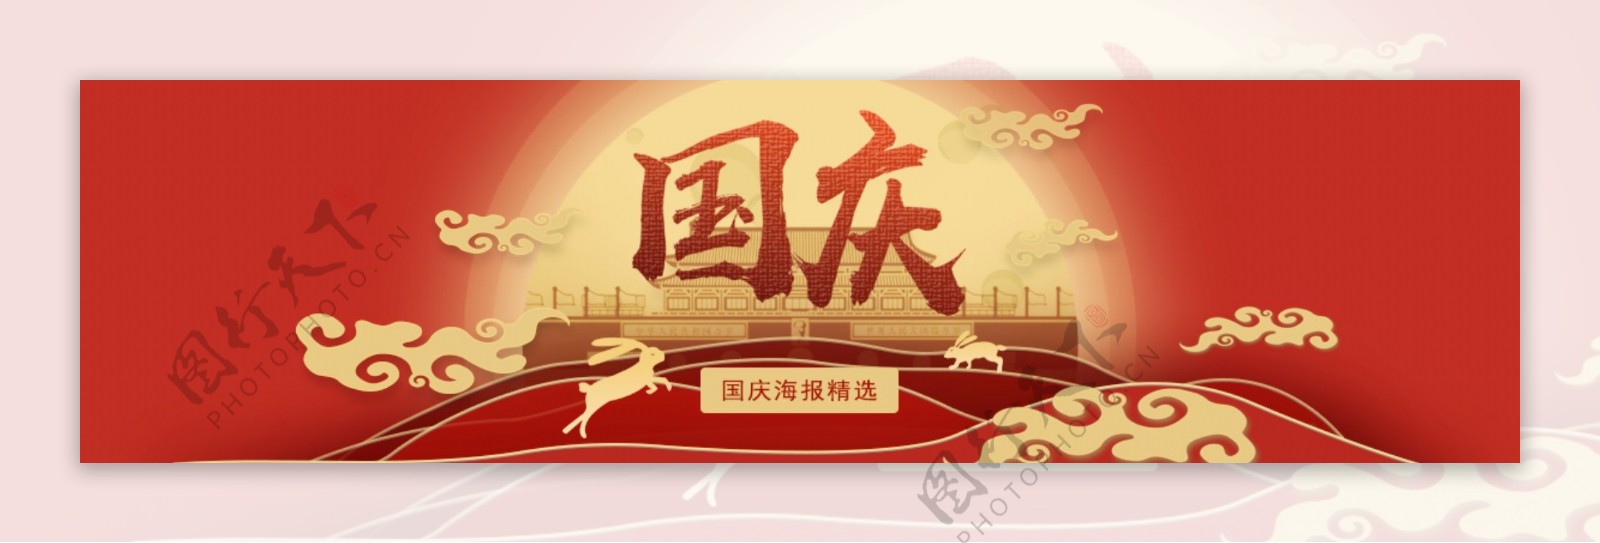 红色国庆节商业banner设计